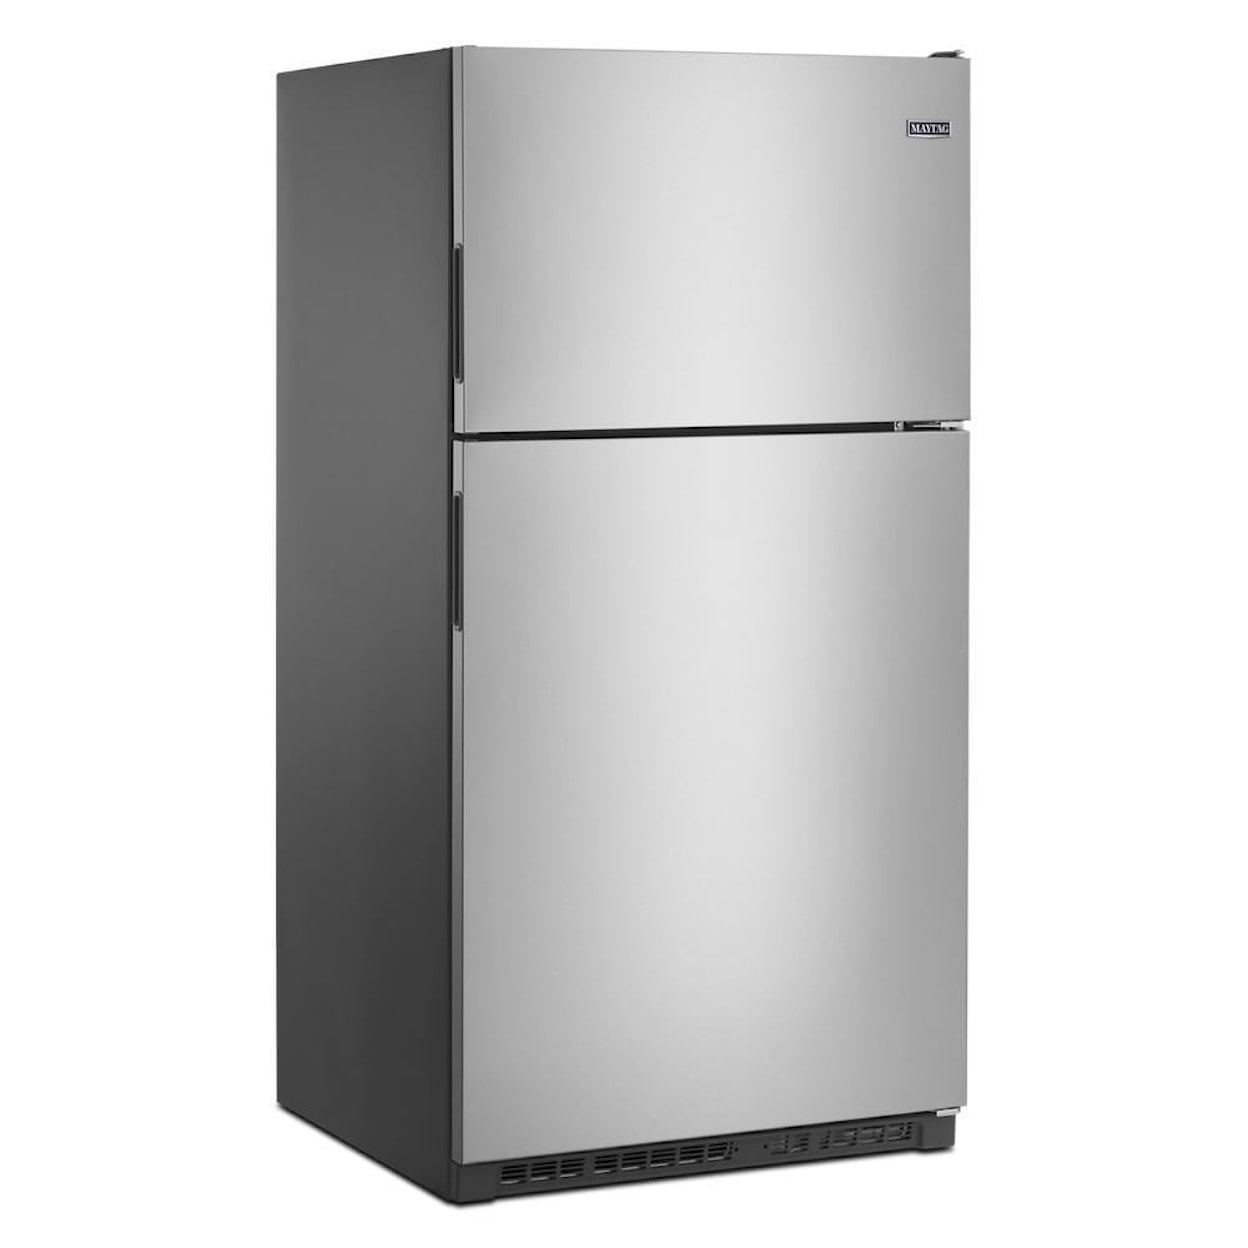 Maytag Refrigerators Refrigerator